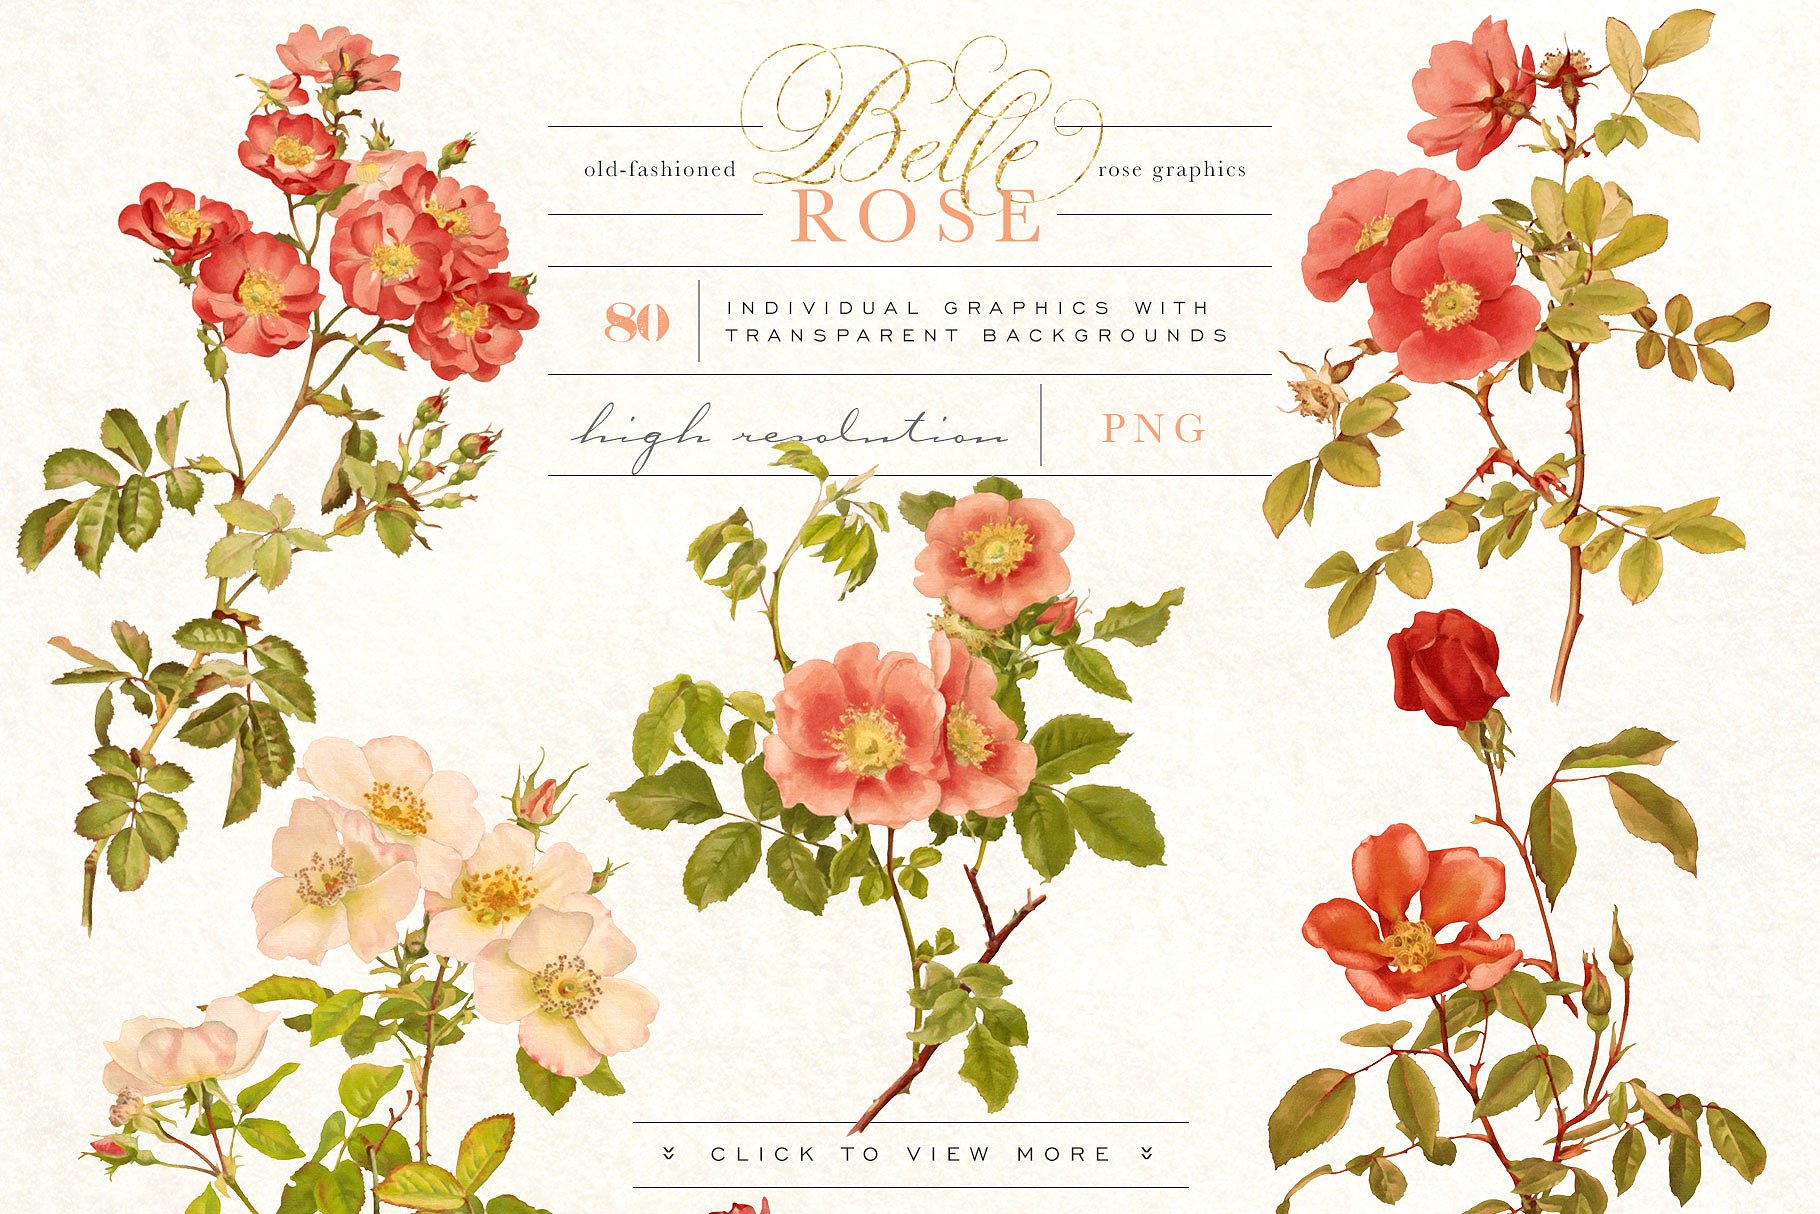 旧时尚老派水彩玫瑰花卉剪贴画合集 Belle Rose Antique Graphics Bundle插图(3)